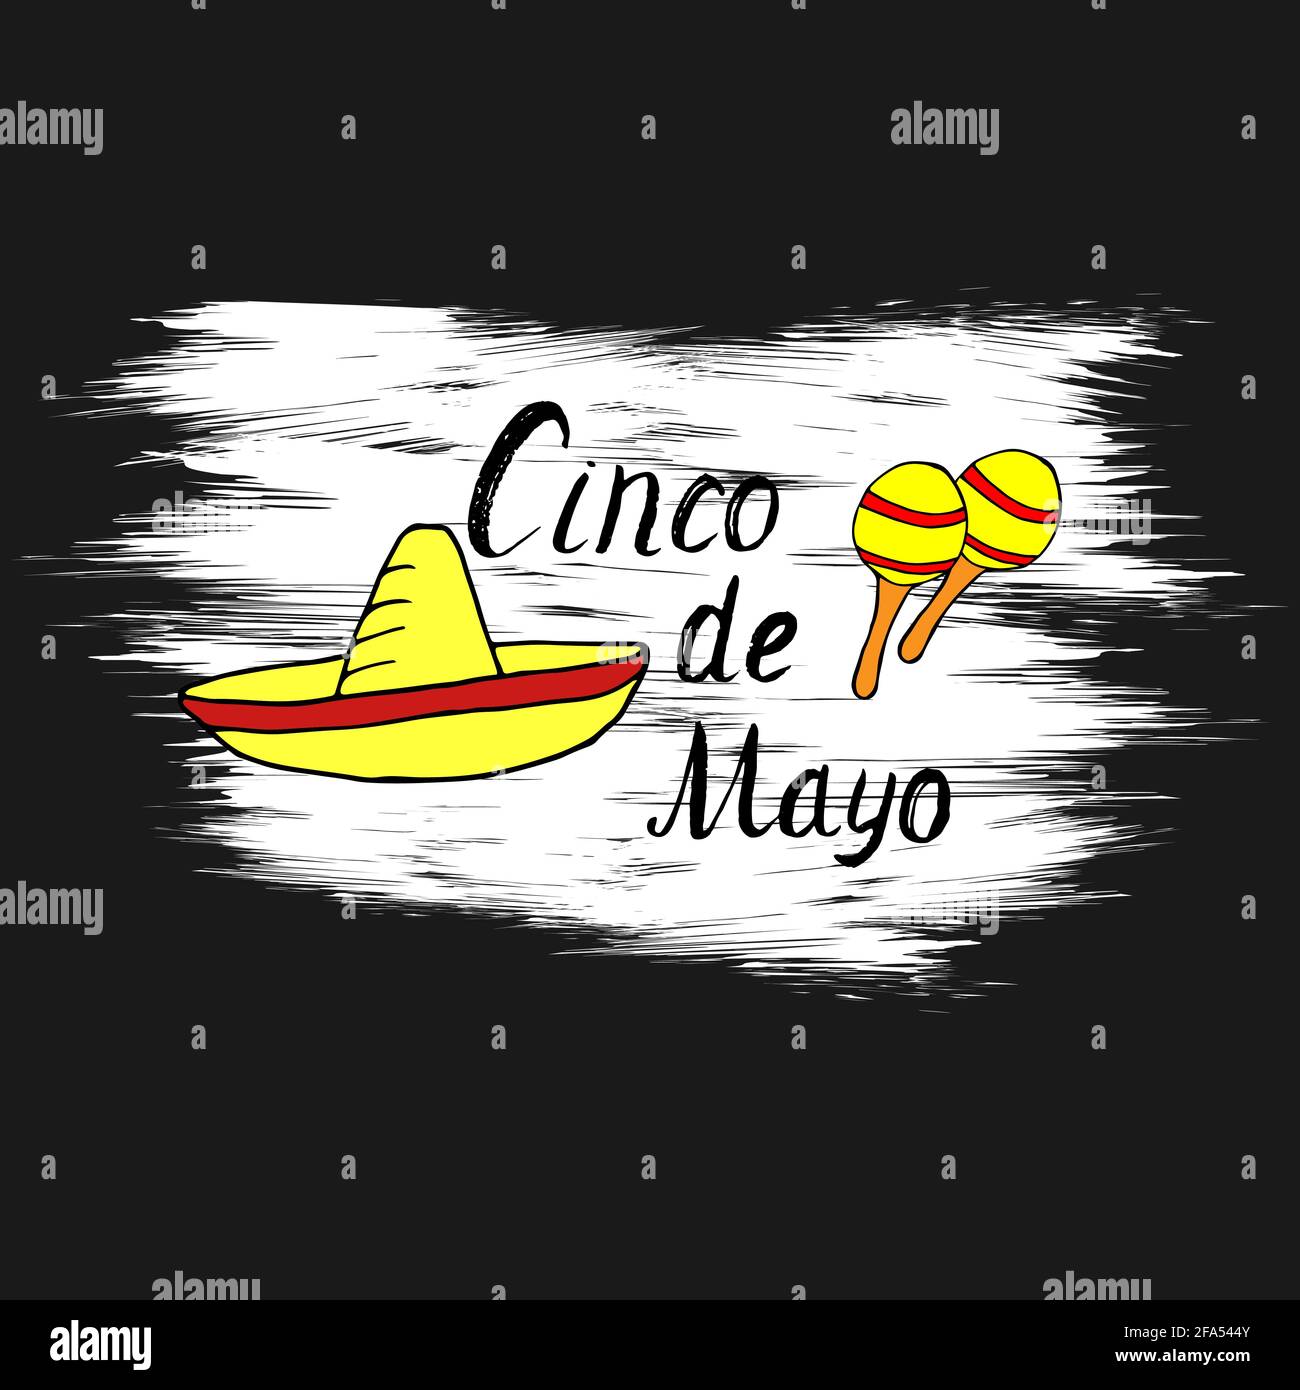 Cinco de Mayo handgeschriebenes Phrasendesign mit Schriftzügen, handgezeichnete Cartoon-Kritzeleien mit farbenfrohen Sombrero und Maracas auf weißem Grunge-Hintergrund. Vektor Stock Vektor